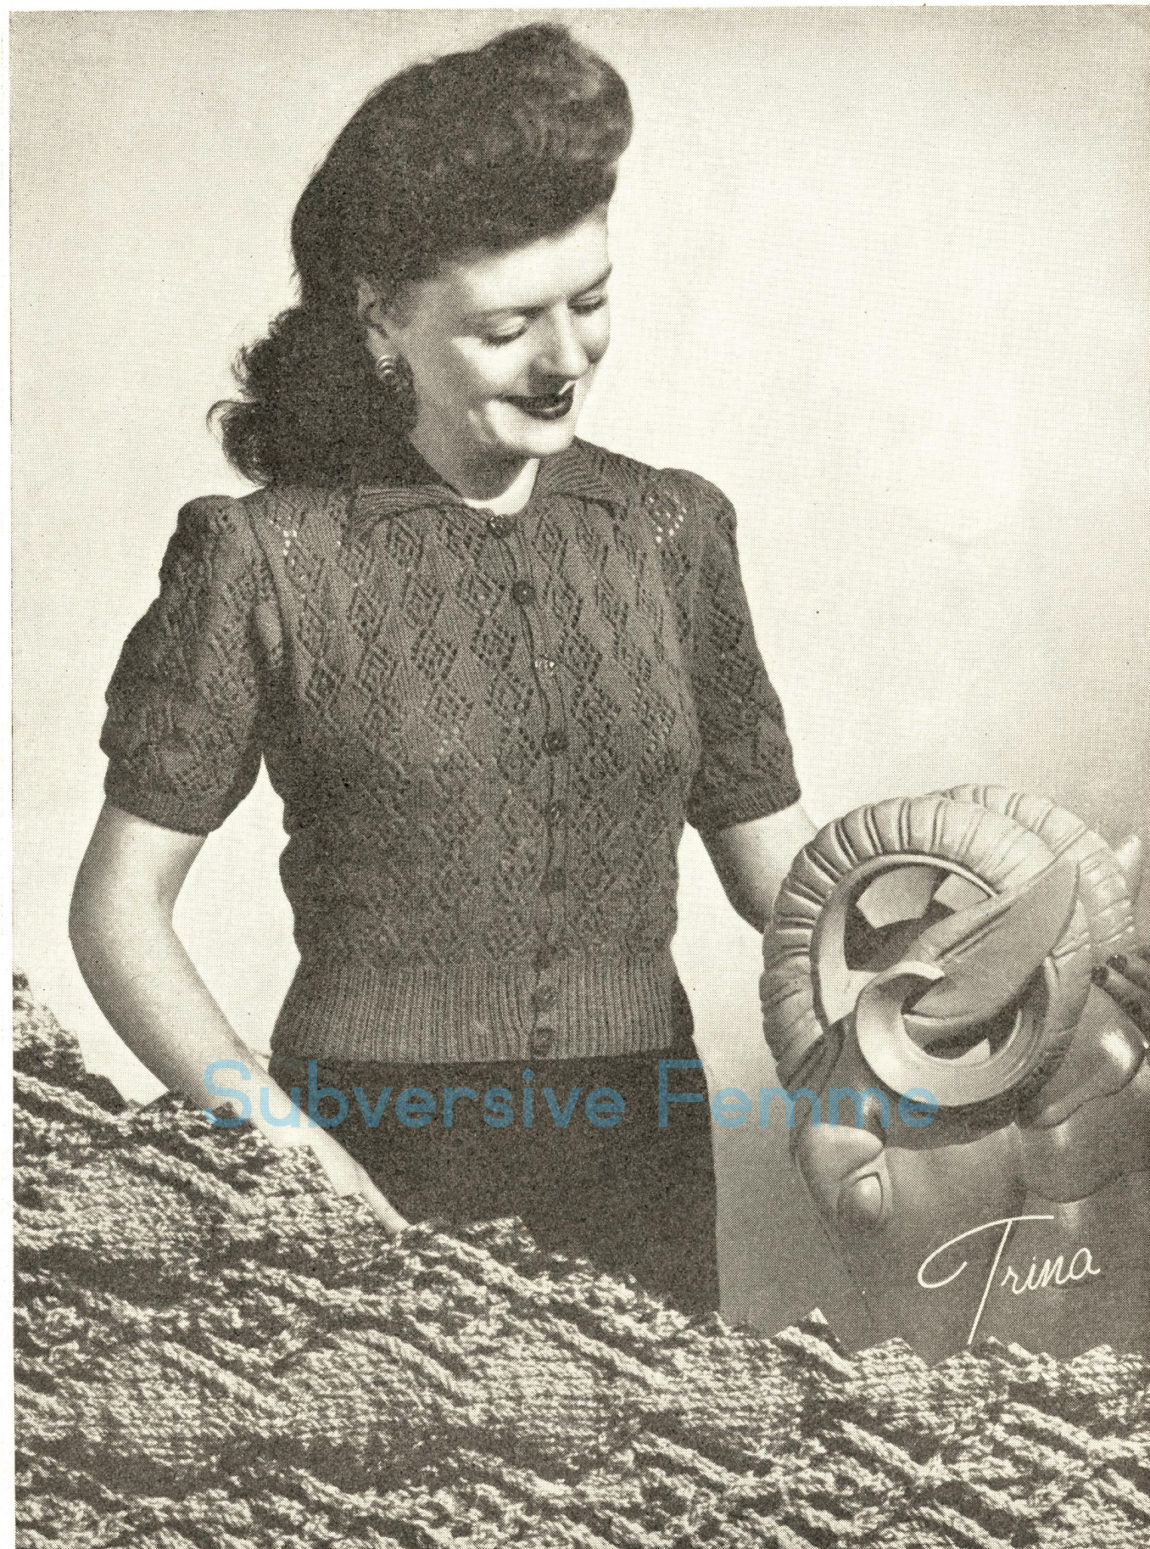 Knitted Jacket Patterns Free Free Knitting Pattern Trina Cardigan Jacket C 1940s Subversive